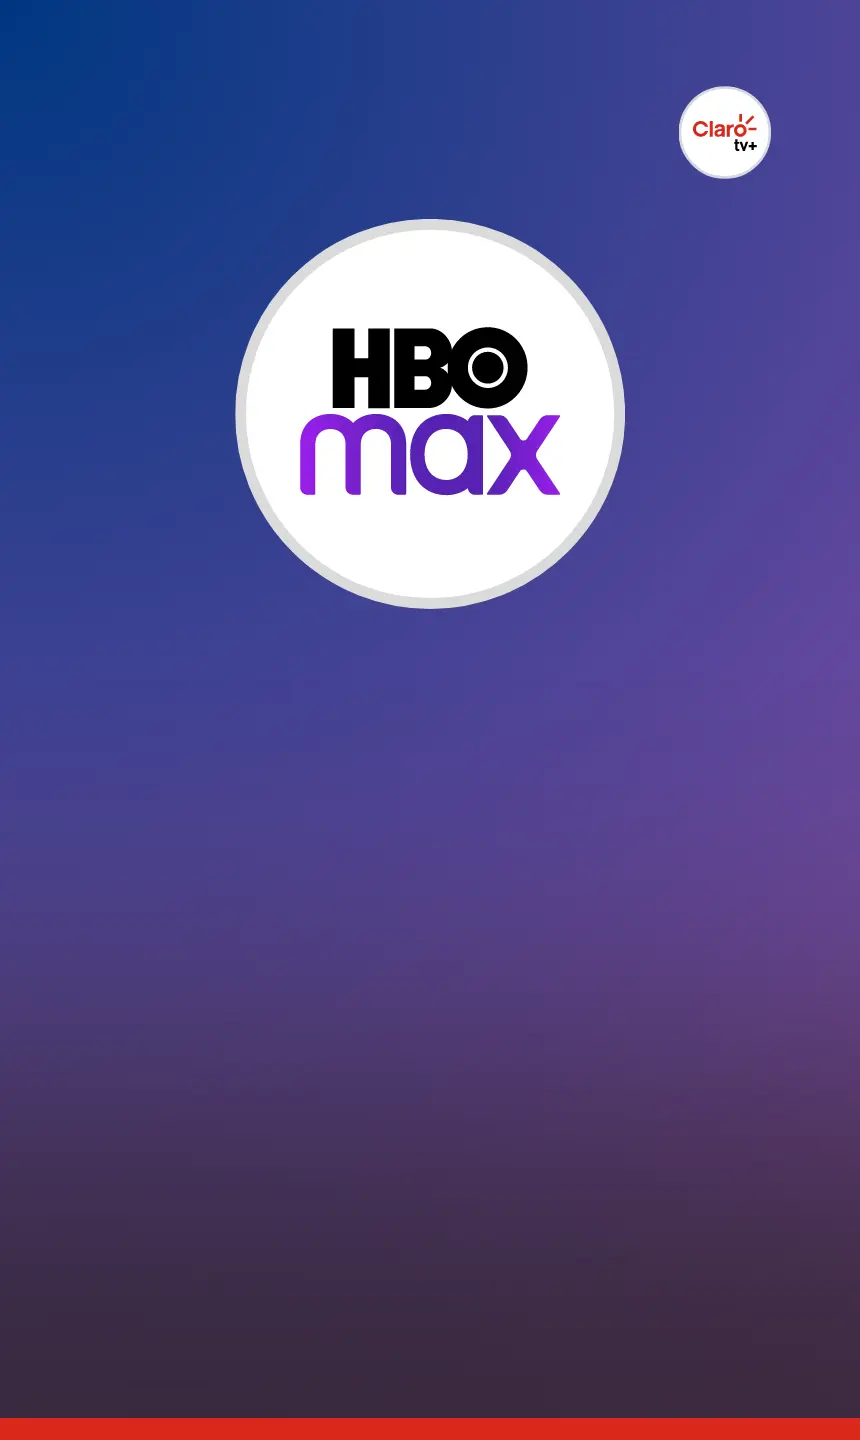 AS MELHORES SÉRIES DA HBO MAX PARA VOCÊ ASSISTIR! 